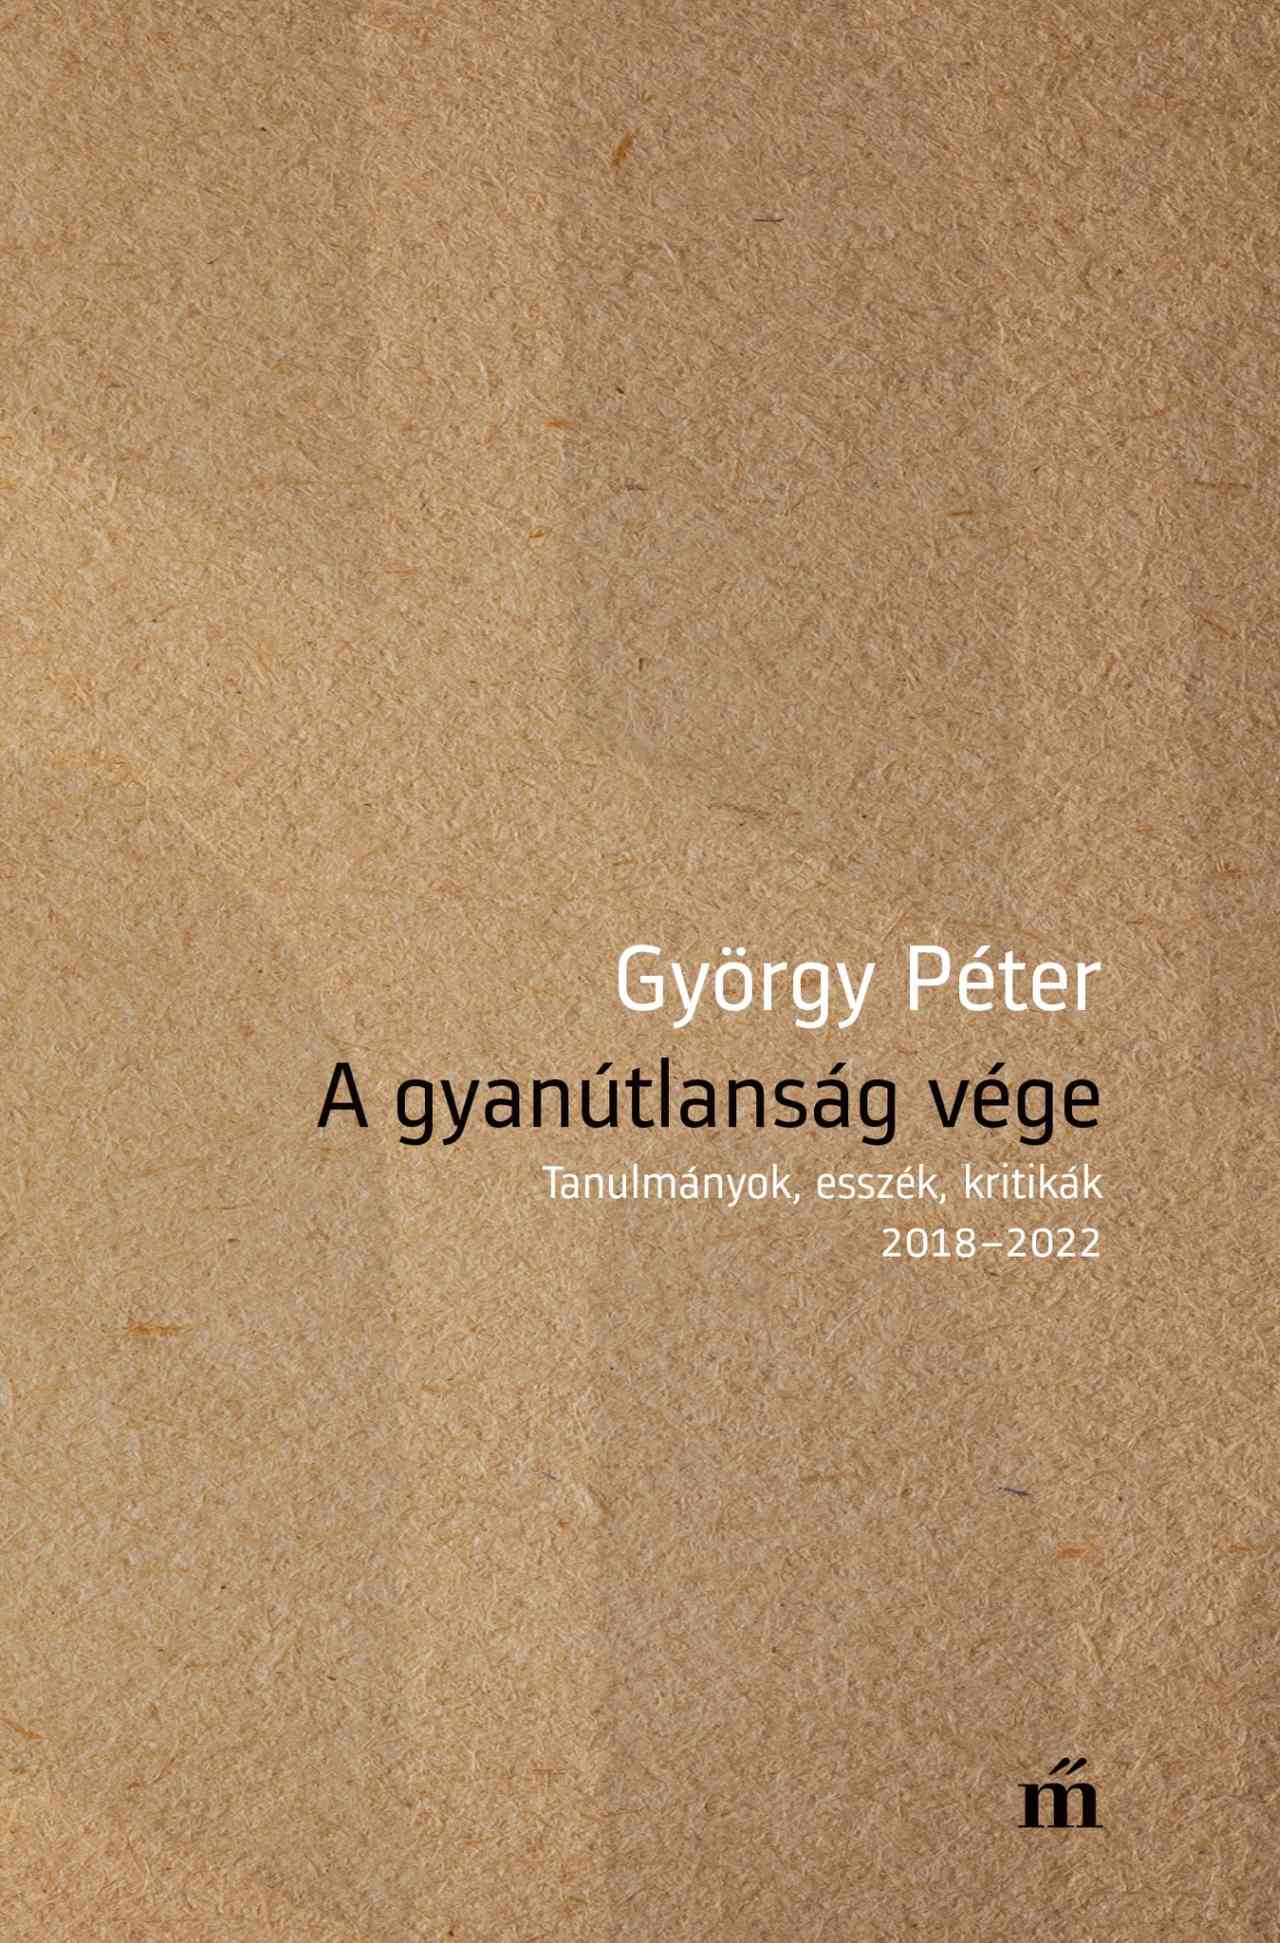 György Péter - A gyanútlanság vége - Tanulmányok, esszék, kritikák 2018-2022